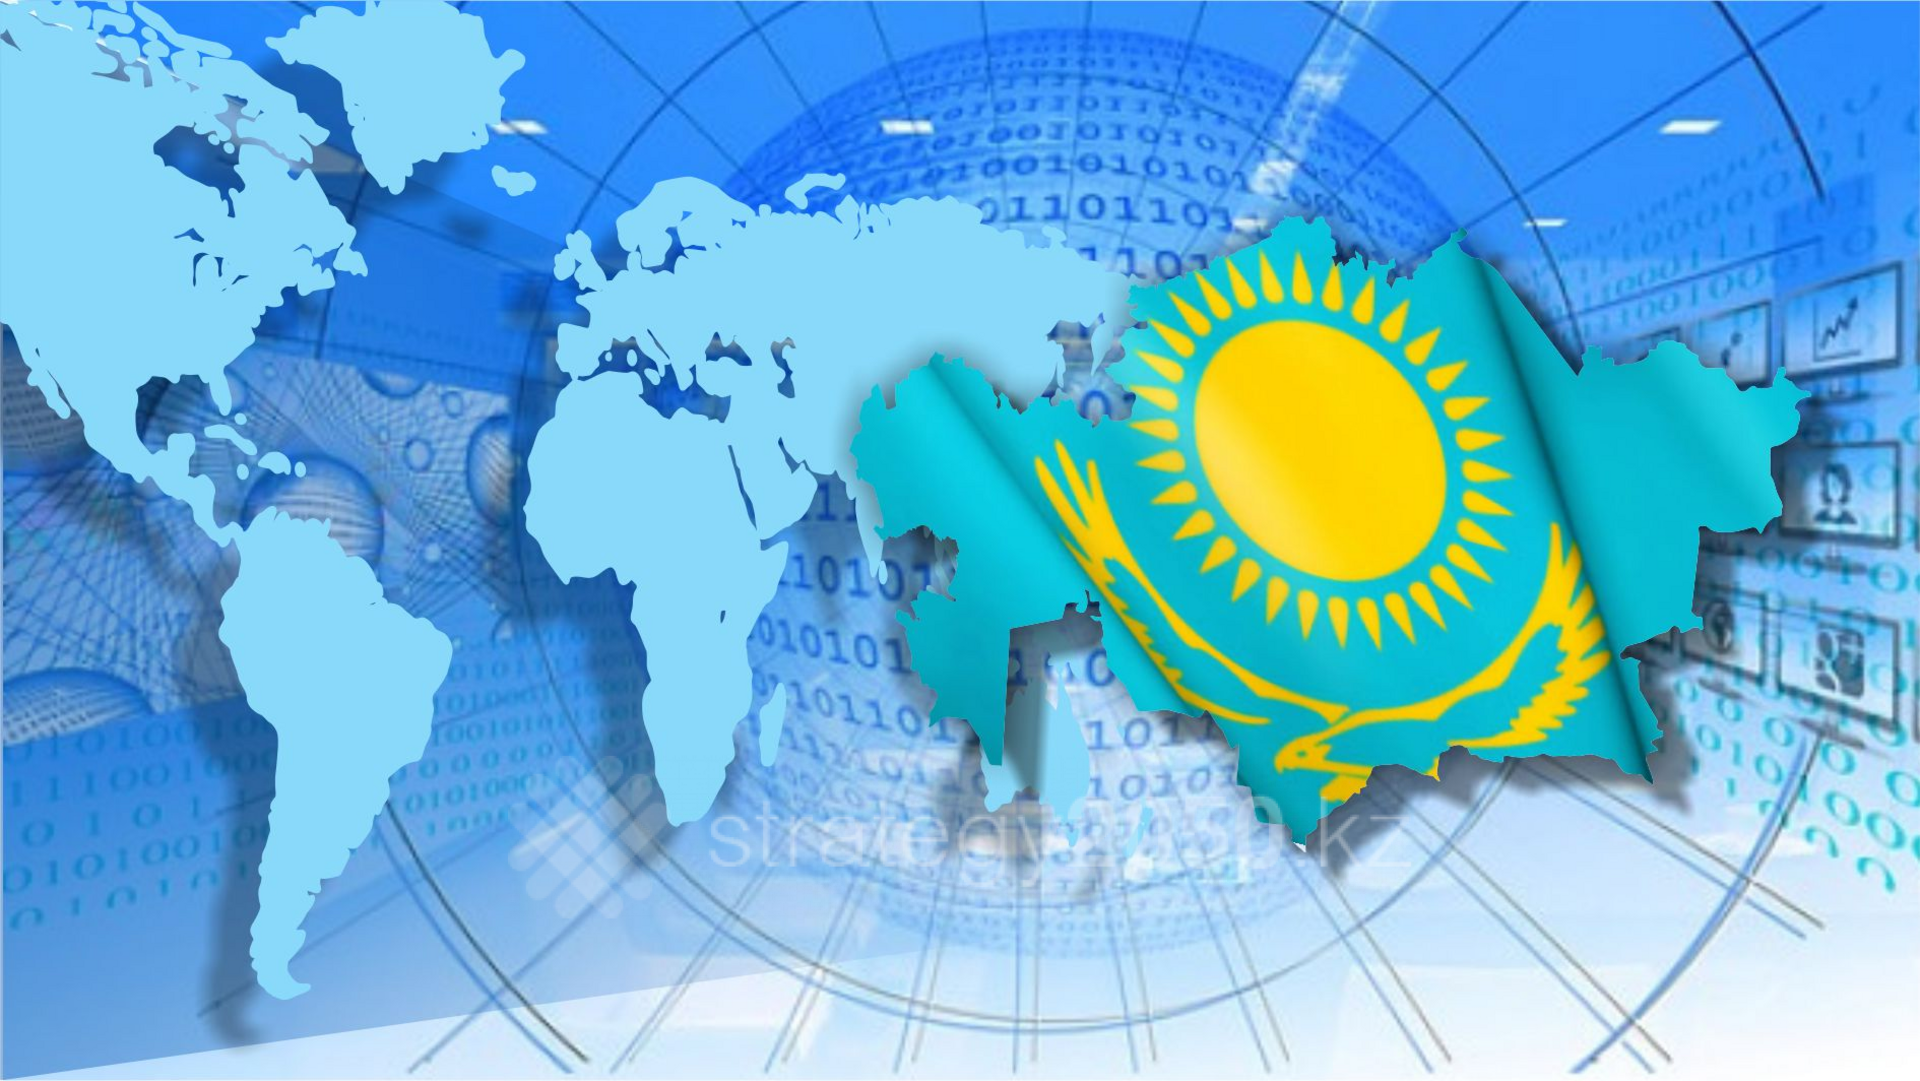 Признание республики казахстан на международной арене